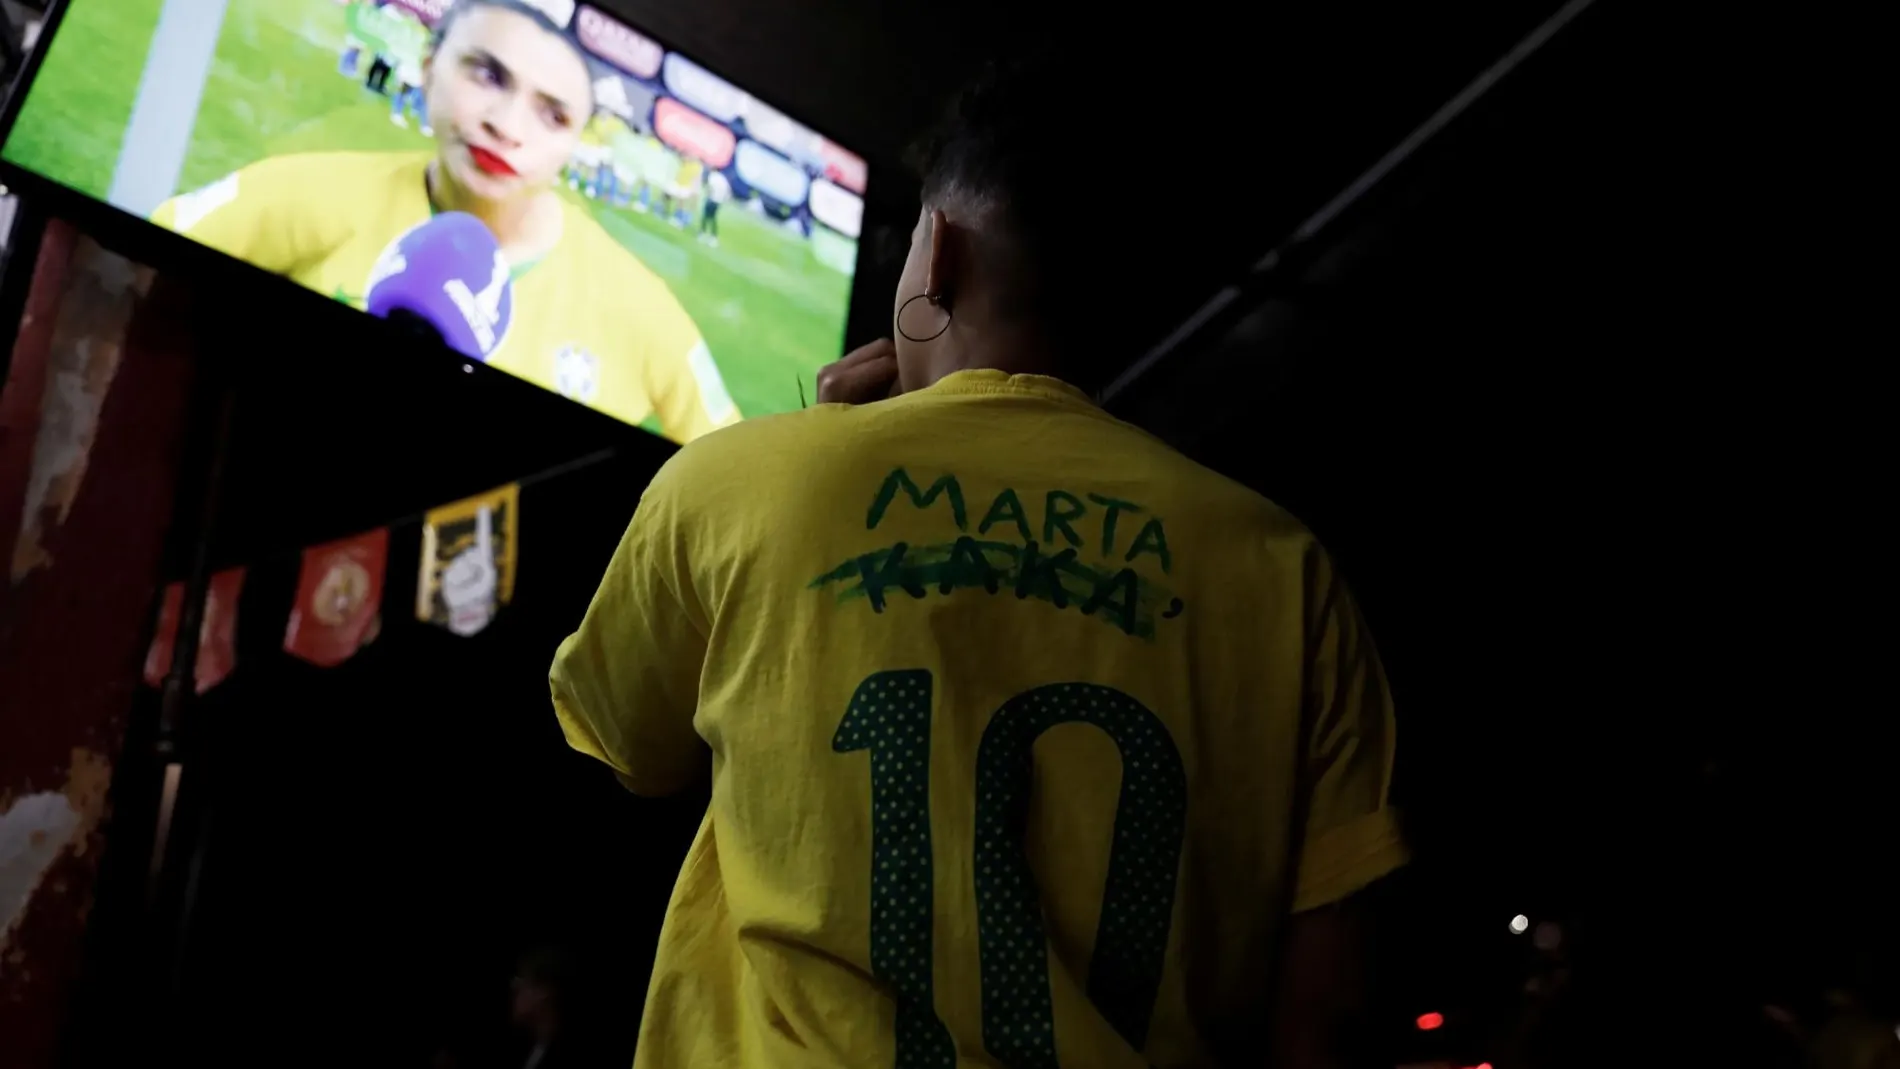 Una niña ve el mensaje de la futbolista Marta por televisión